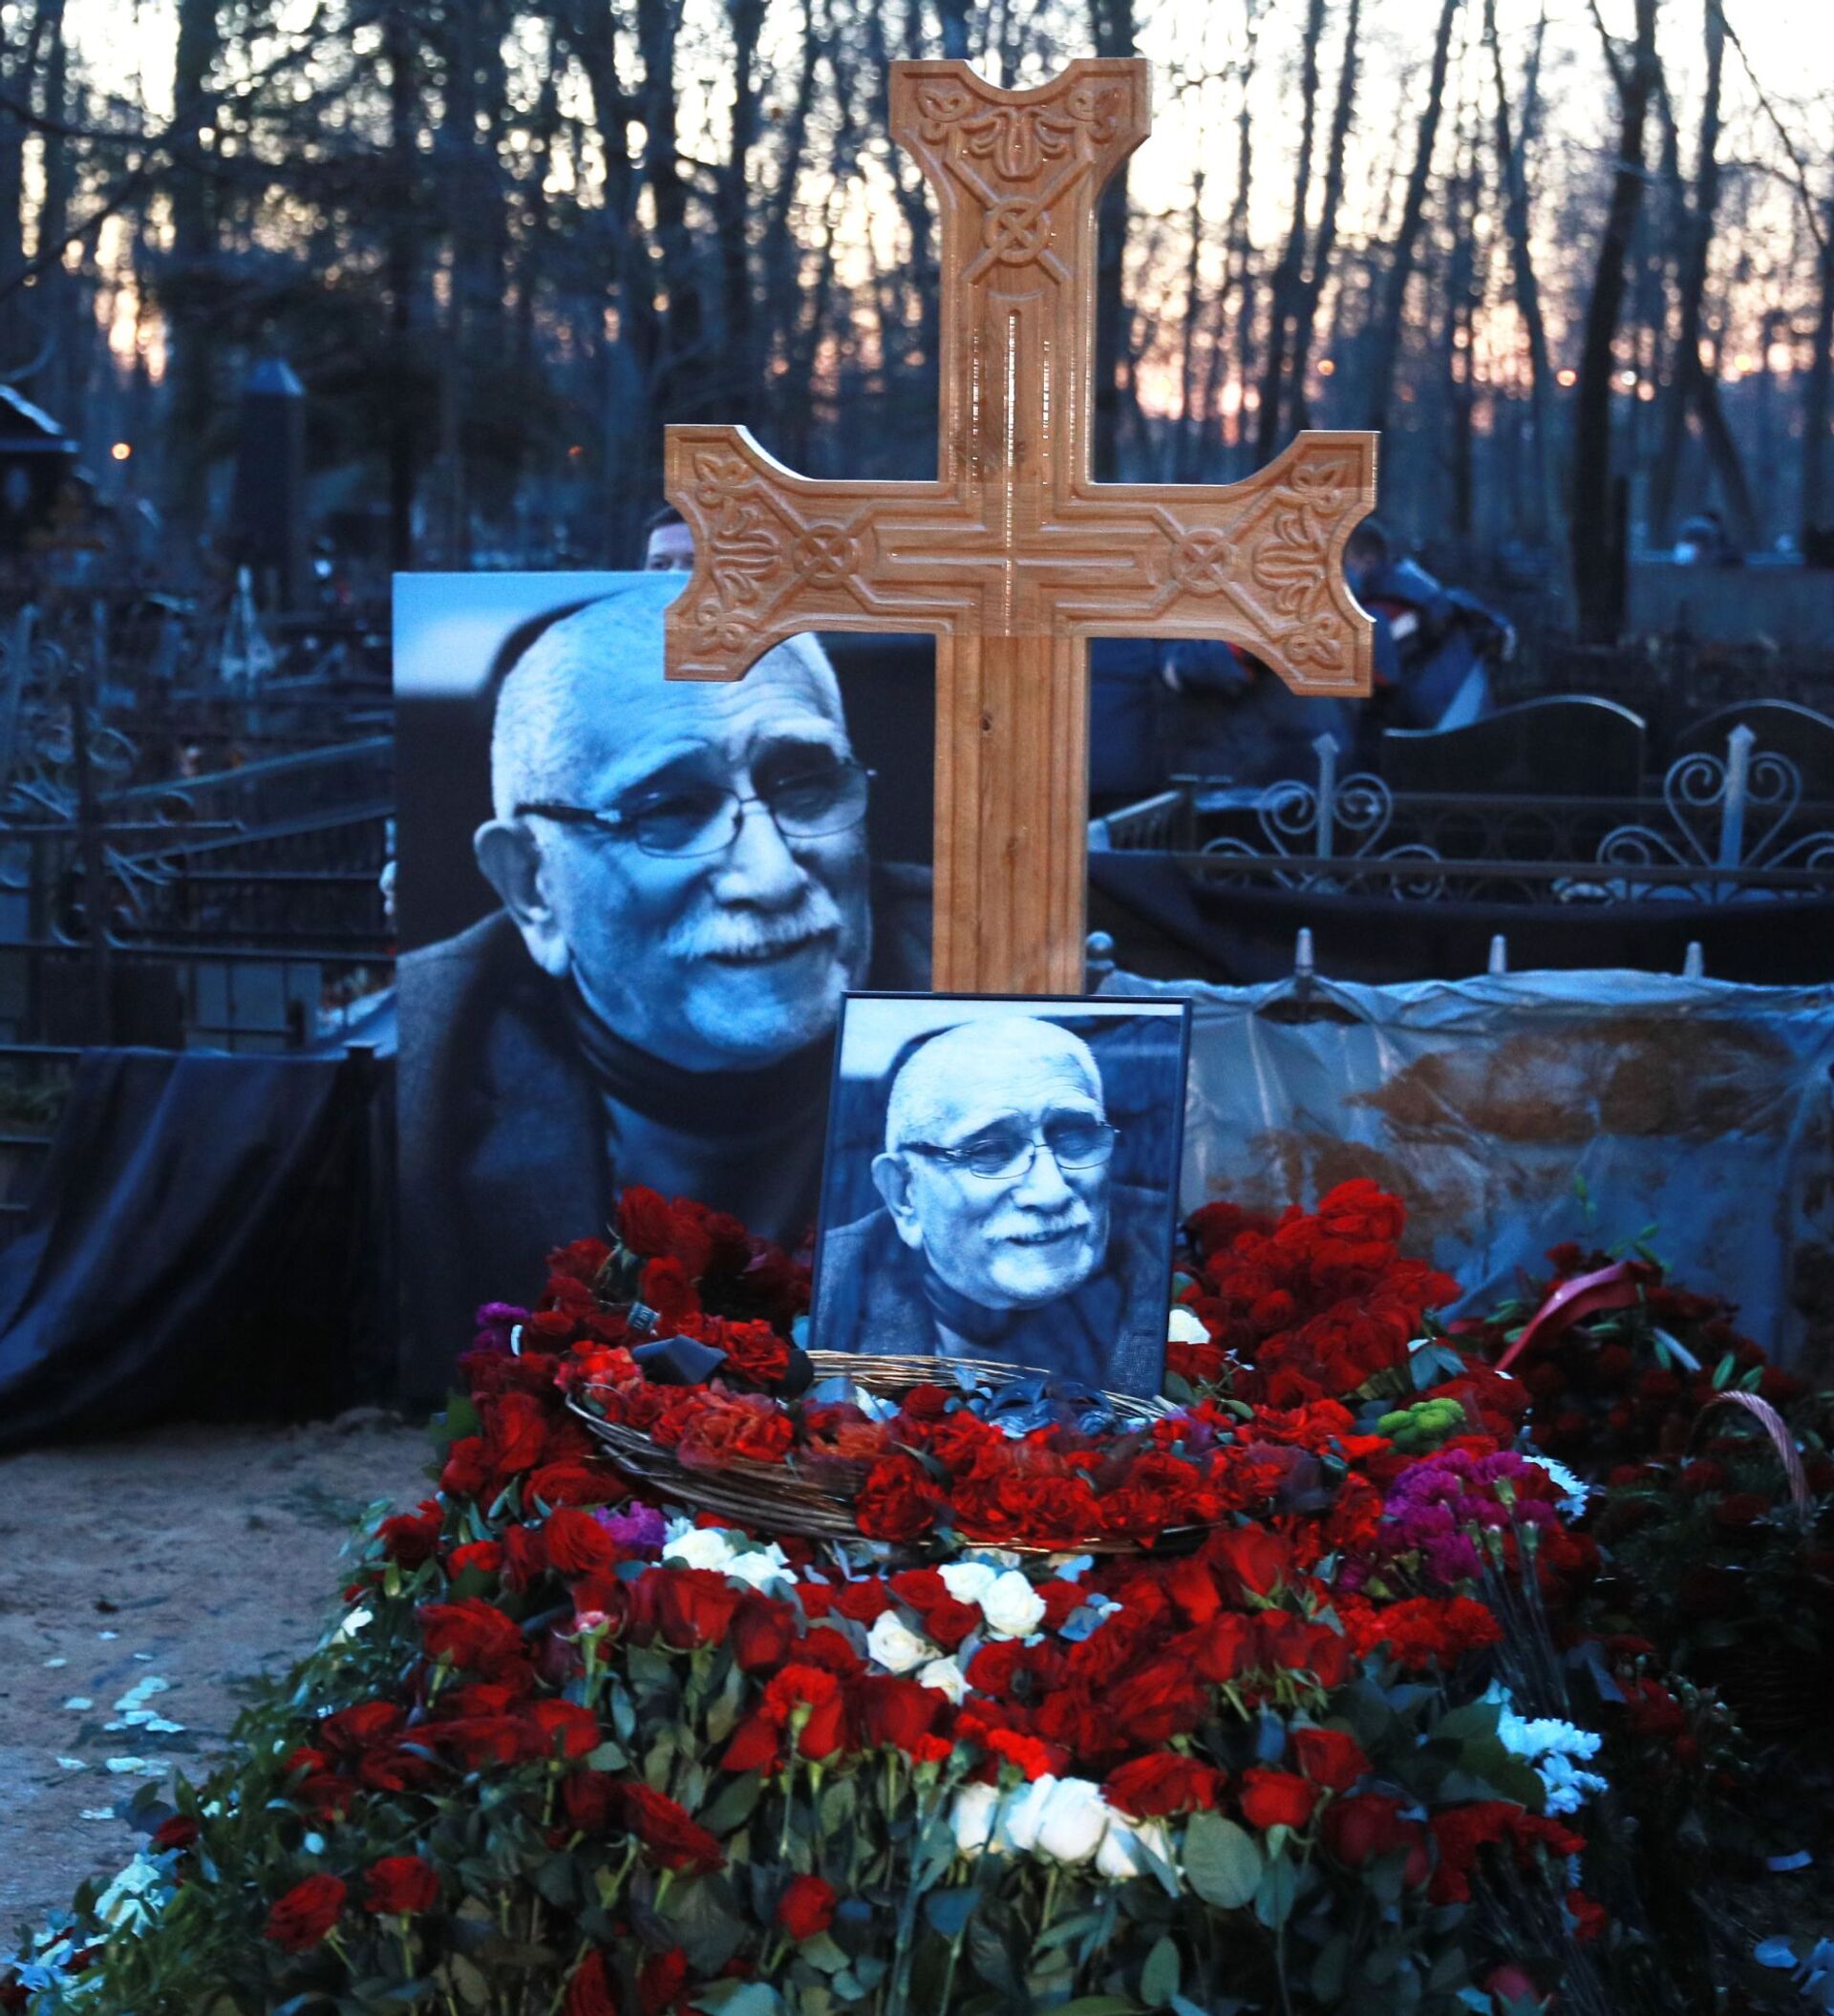 Кладбище похороненных актеров. Могила Армена Джигарханяна Ваганьковское кладбище. Памятник Армена Джигарханяна на Ваганьковском кладбище.